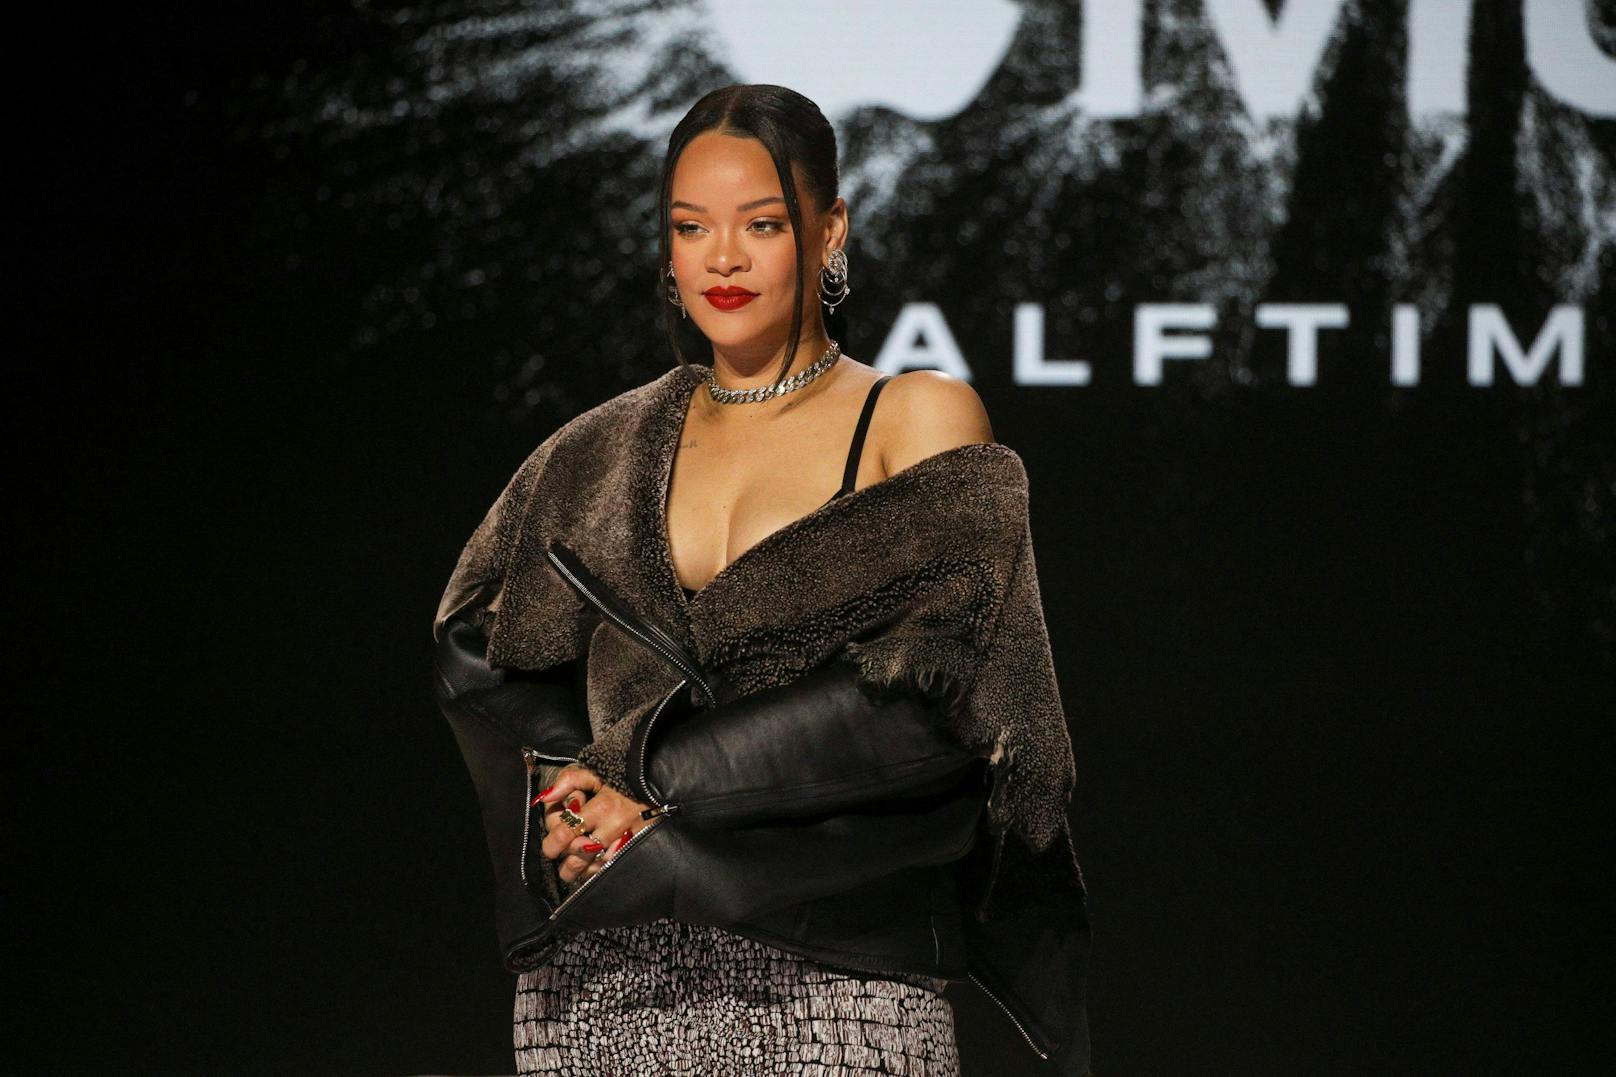 Rihanna über Superbowl: "Werde es vielleicht bereuen"